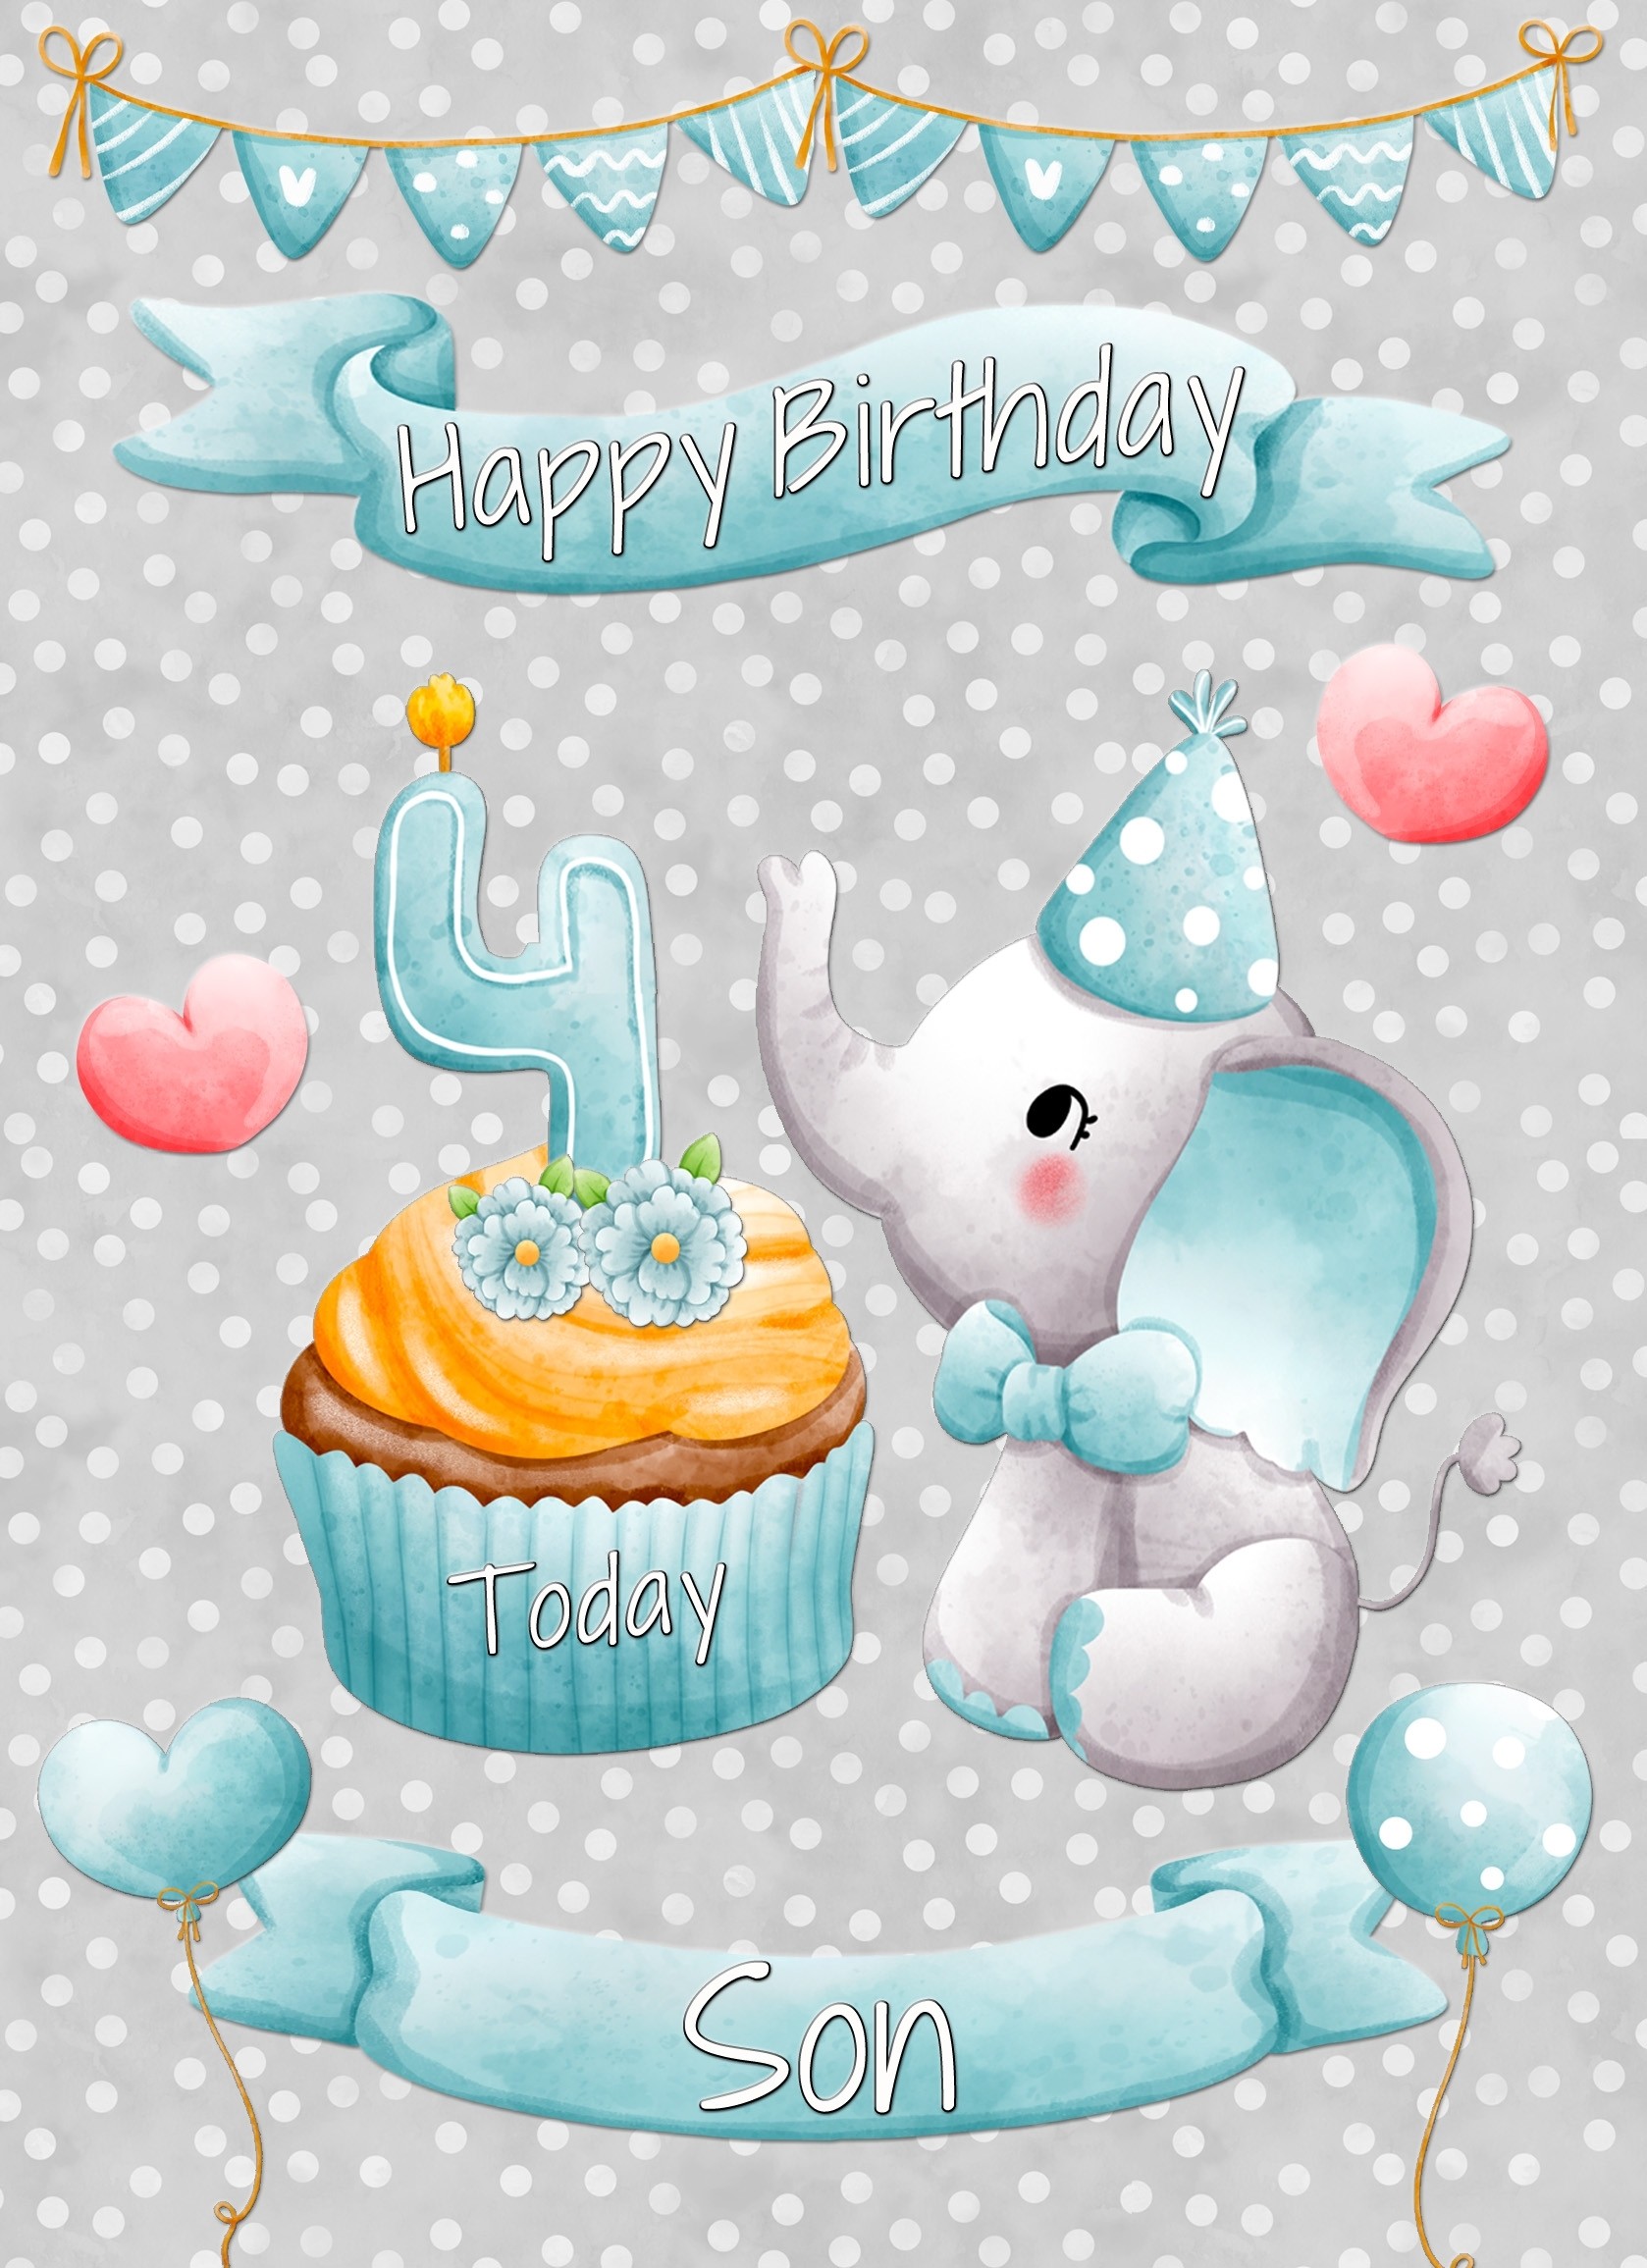 Son 4th Birthday Card (Grey Elephant)